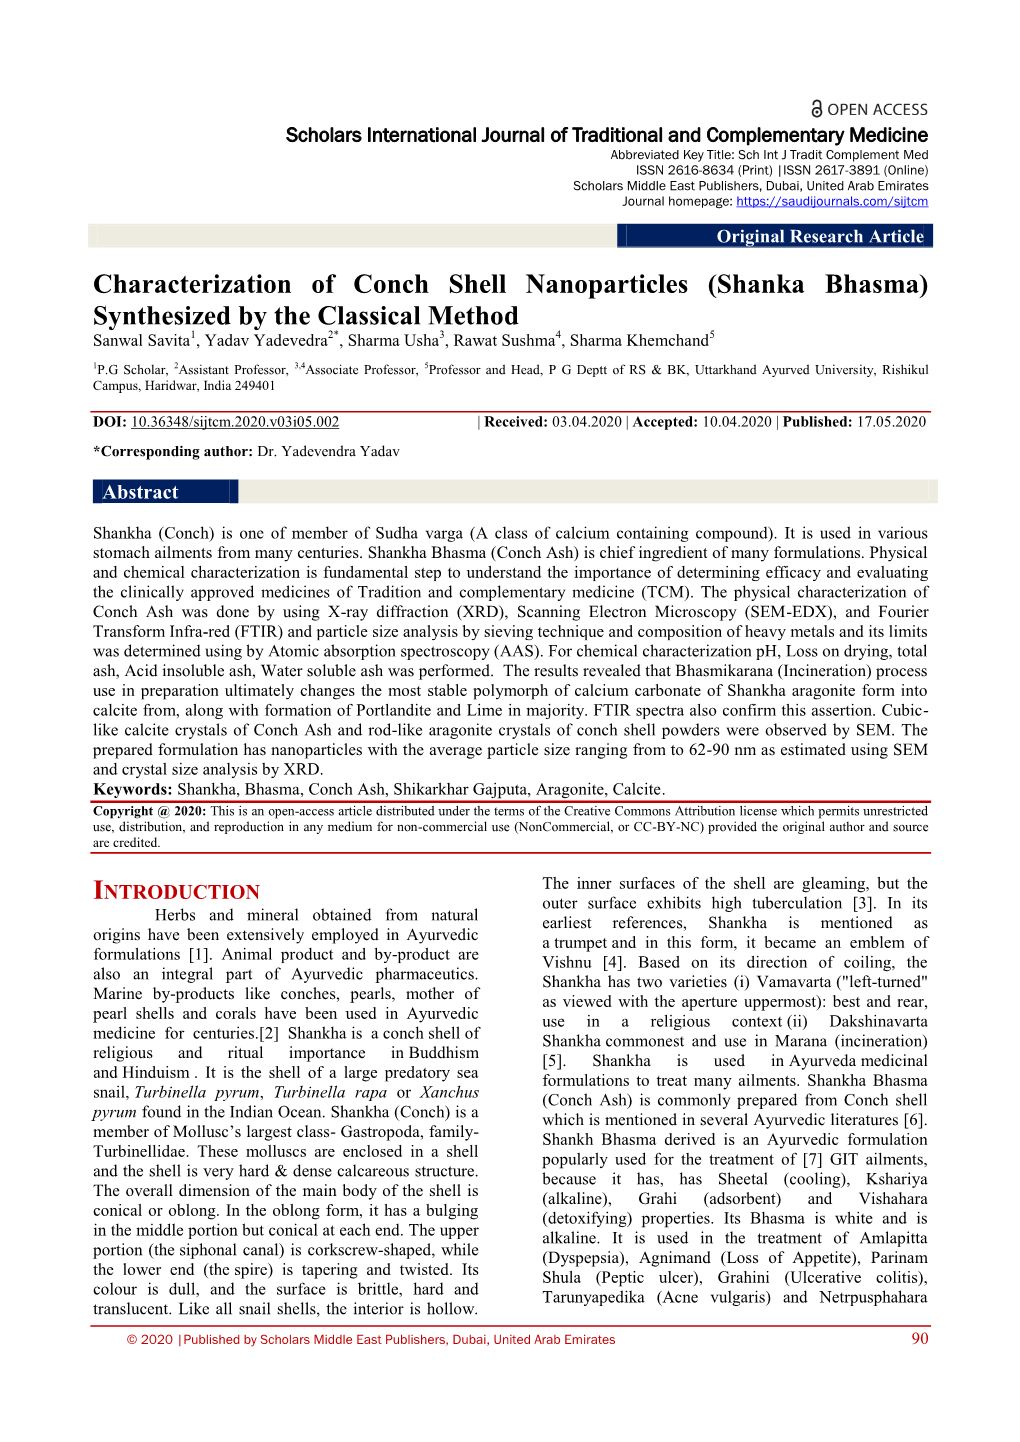 Characterization of Conch Shell Nanoparticles (Shanka Bhasma